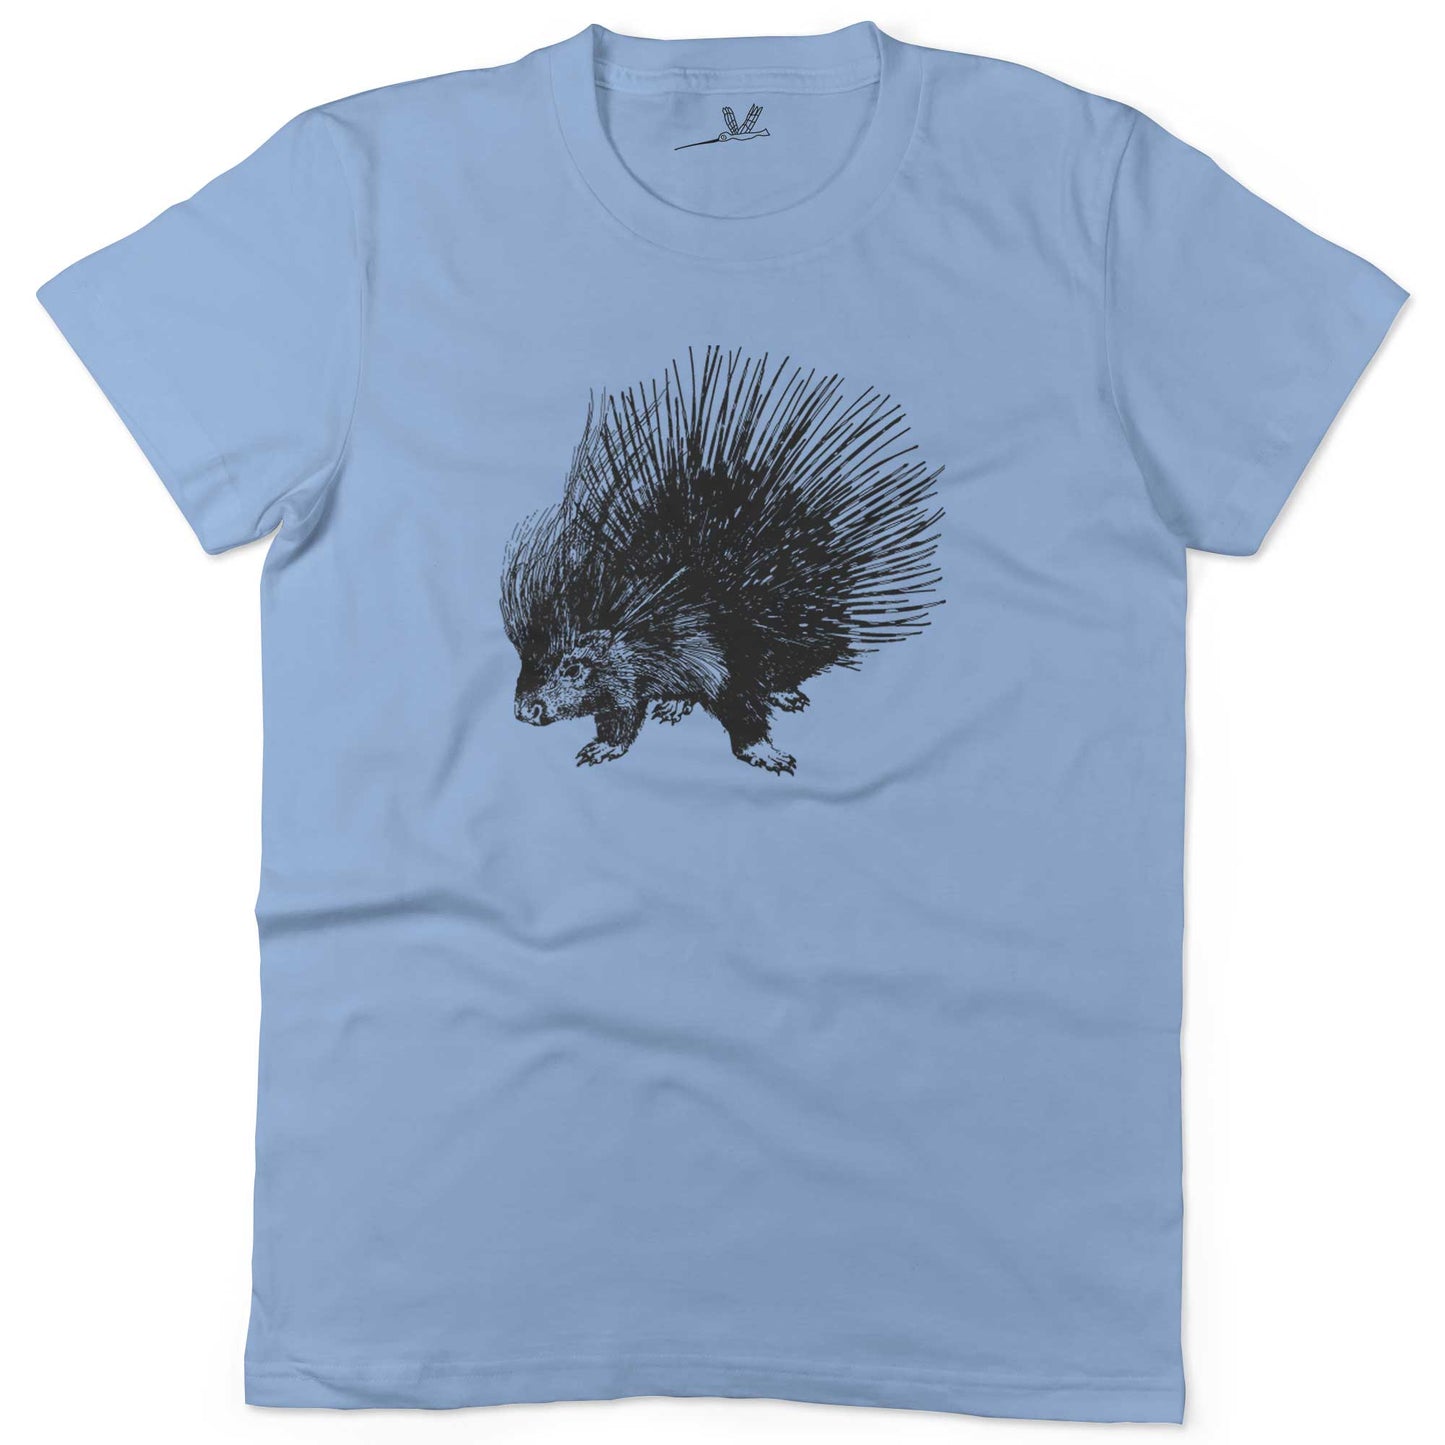 Cute Porcupine Unisex Or Women's Cotton T-shirt-Baby Blue-Woman